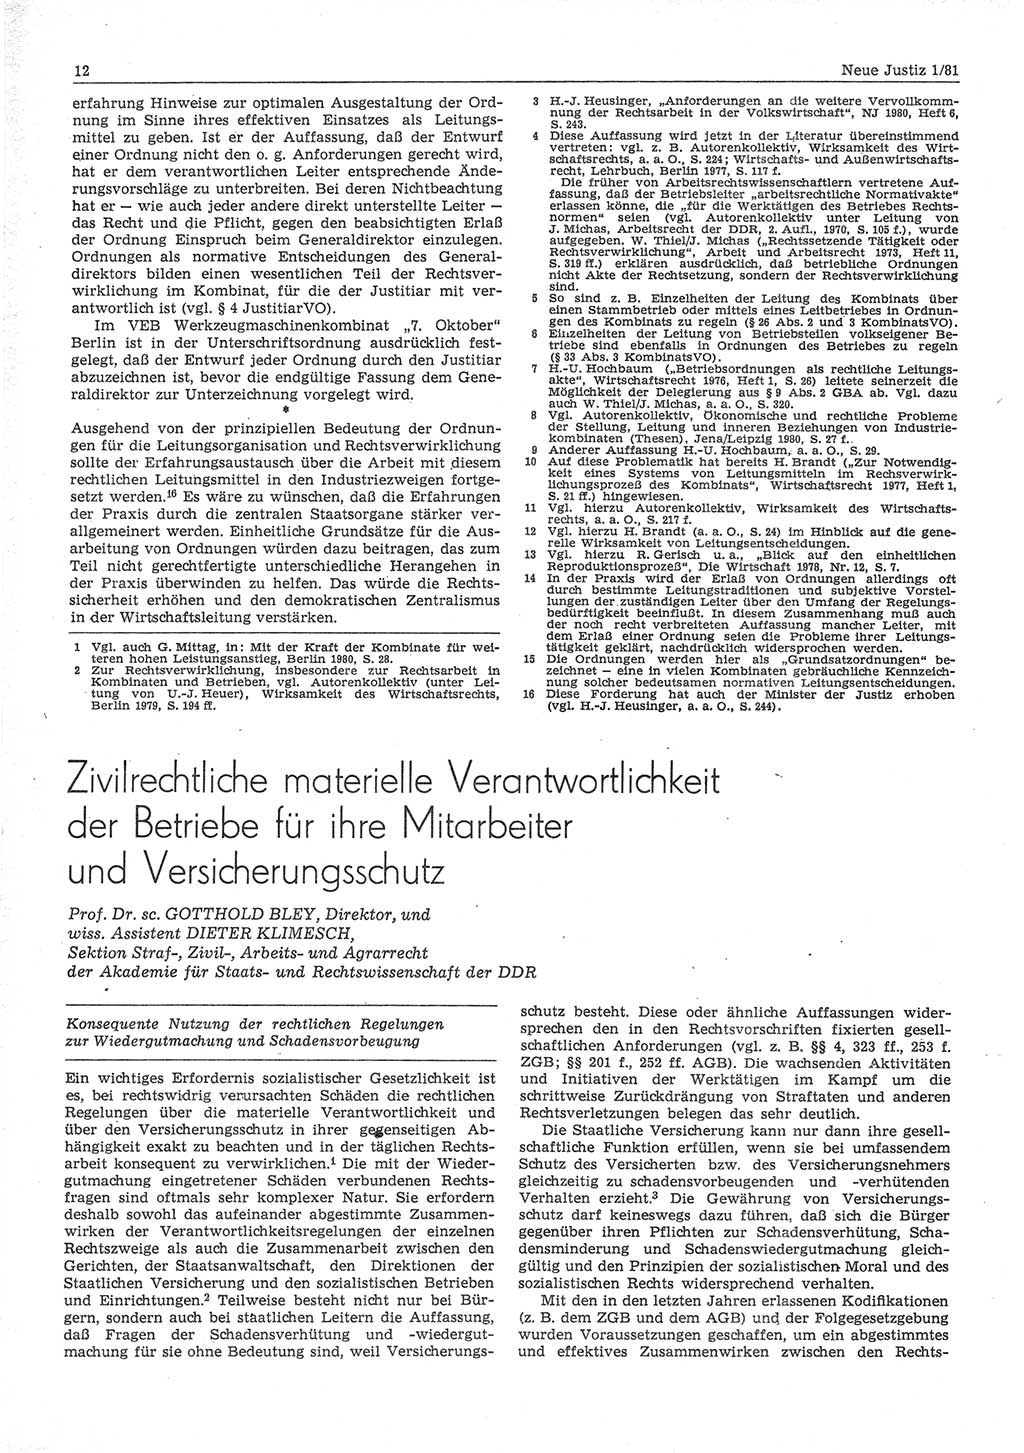 Neue Justiz (NJ), Zeitschrift für sozialistisches Recht und Gesetzlichkeit [Deutsche Demokratische Republik (DDR)], 35. Jahrgang 1981, Seite 12 (NJ DDR 1981, S. 12)